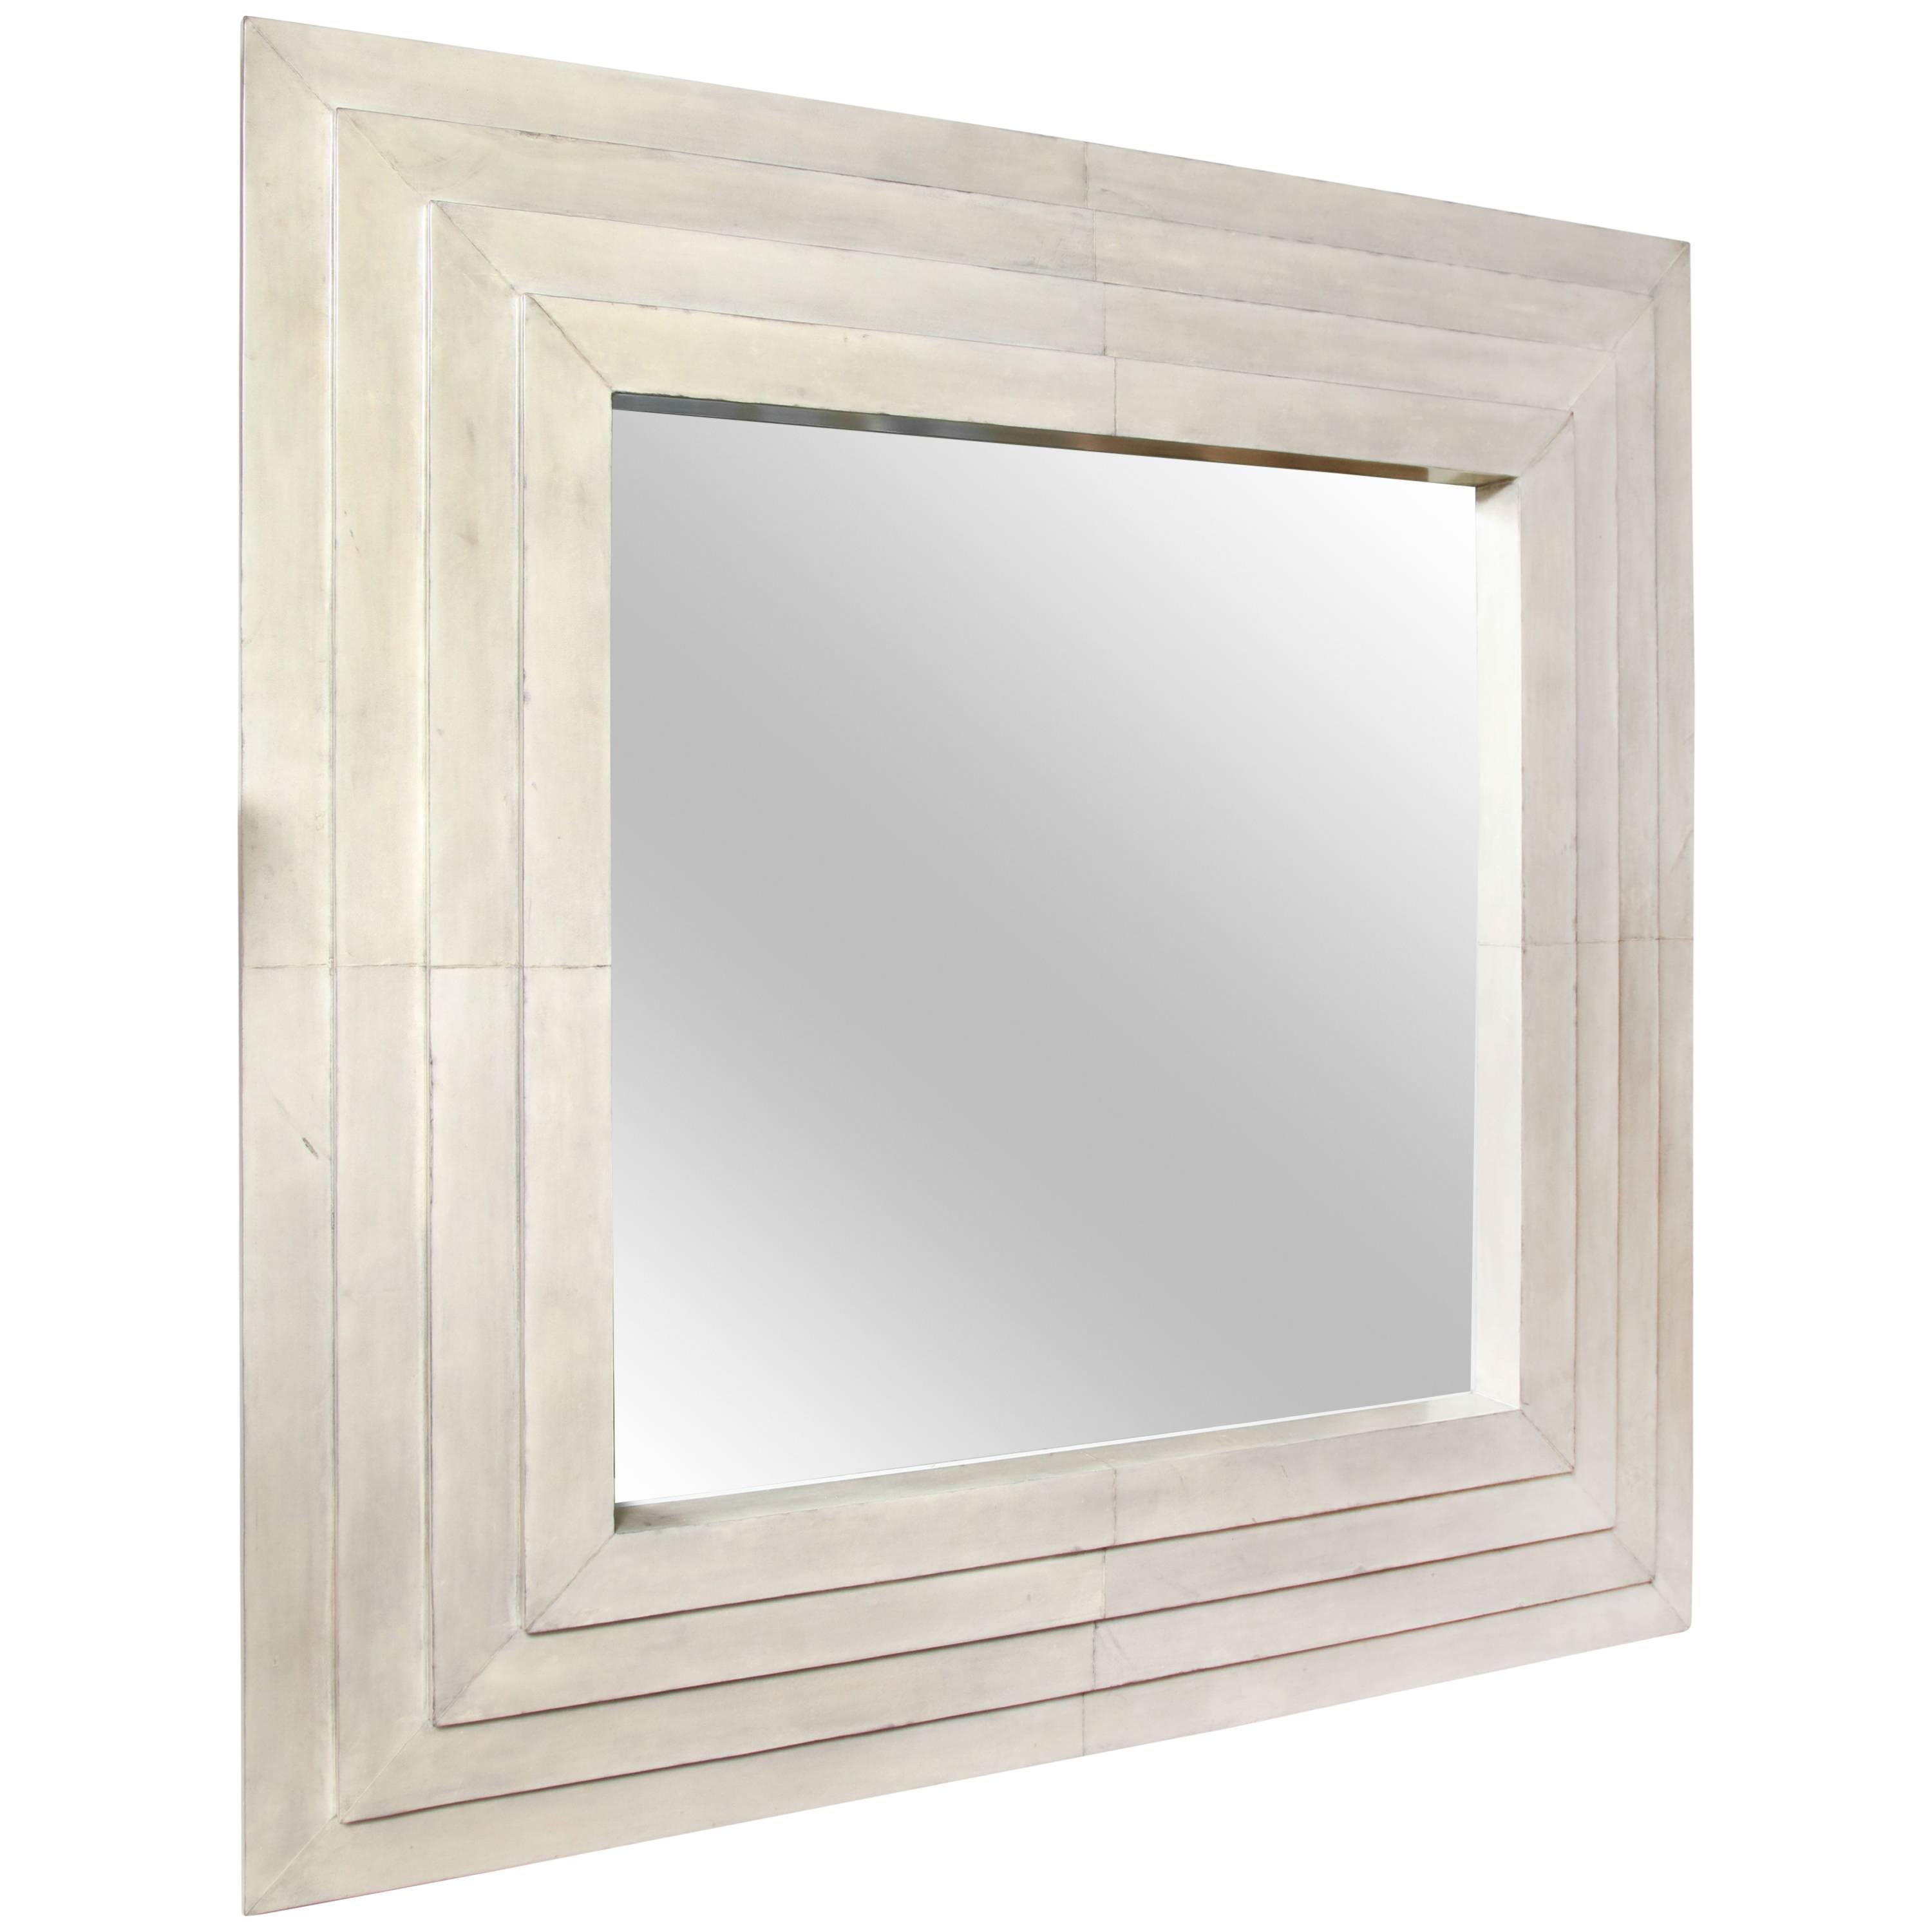 Miroir carré personnalisé en parchemin avec quatre étages superposés